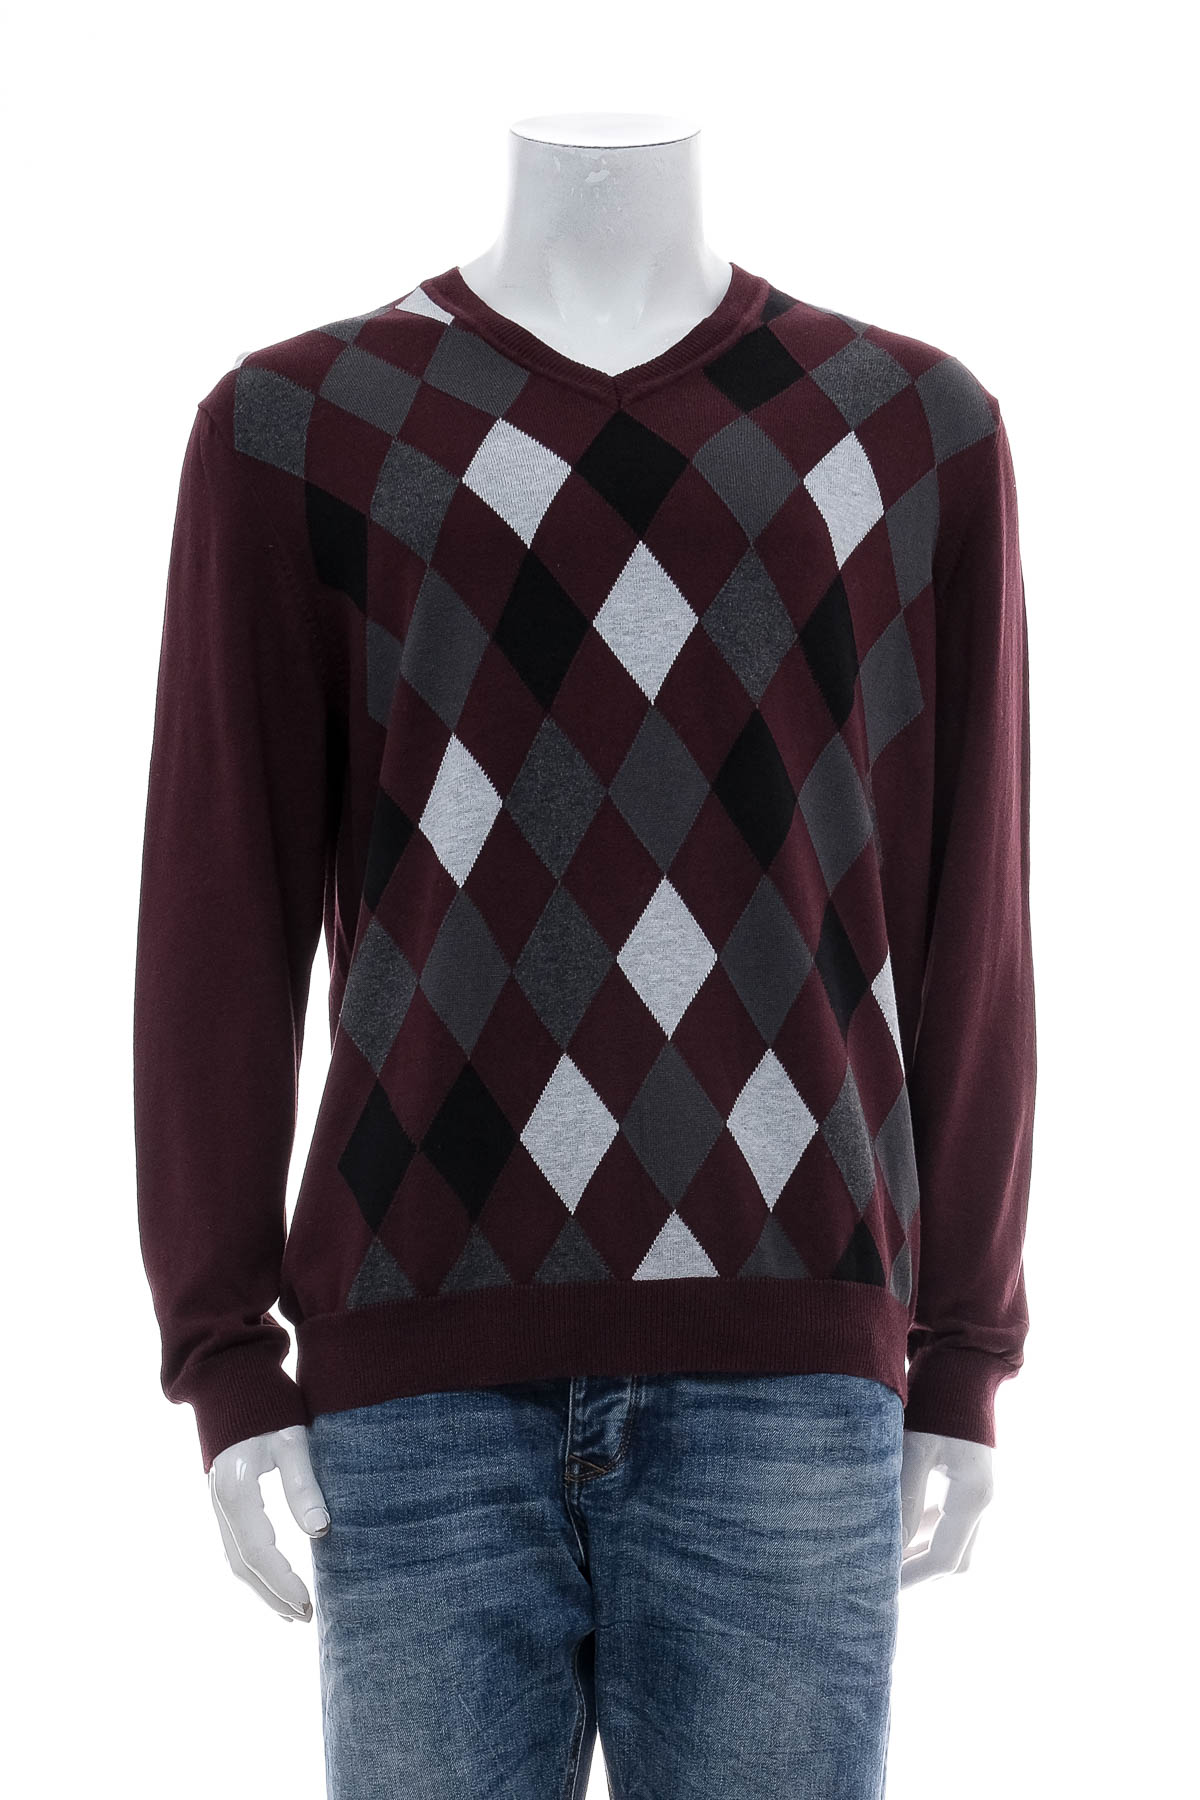 Men's sweater - Axcess - 0